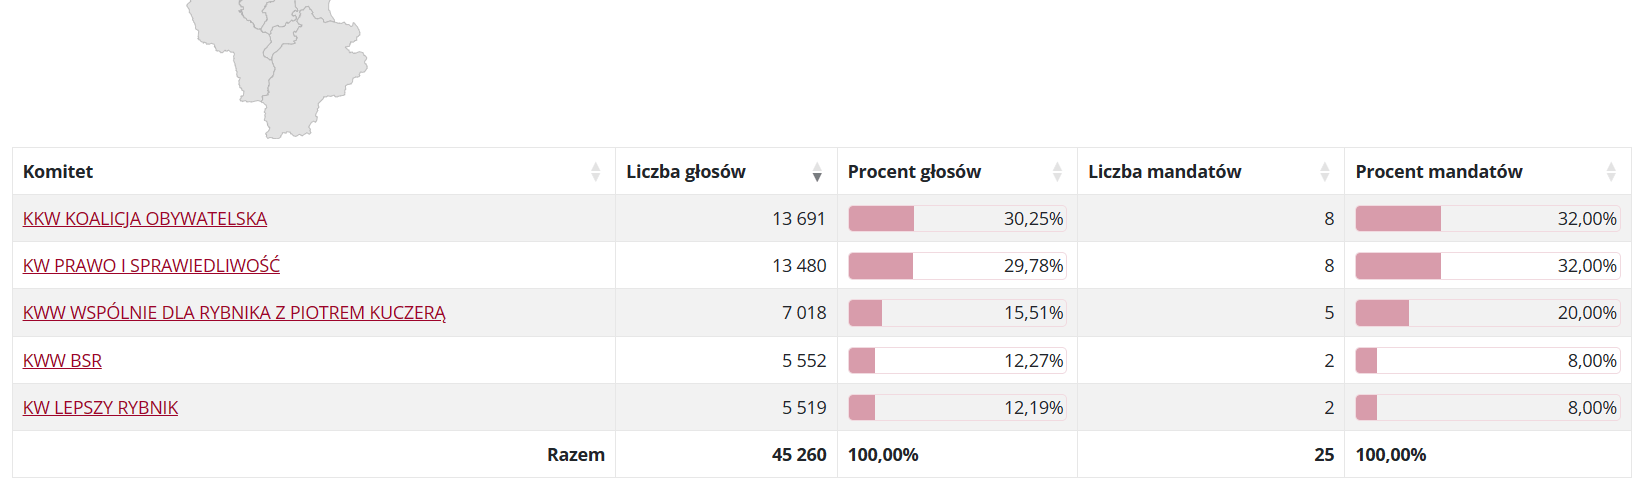 Wyniki wyborów do Rady Miasta Rybnika